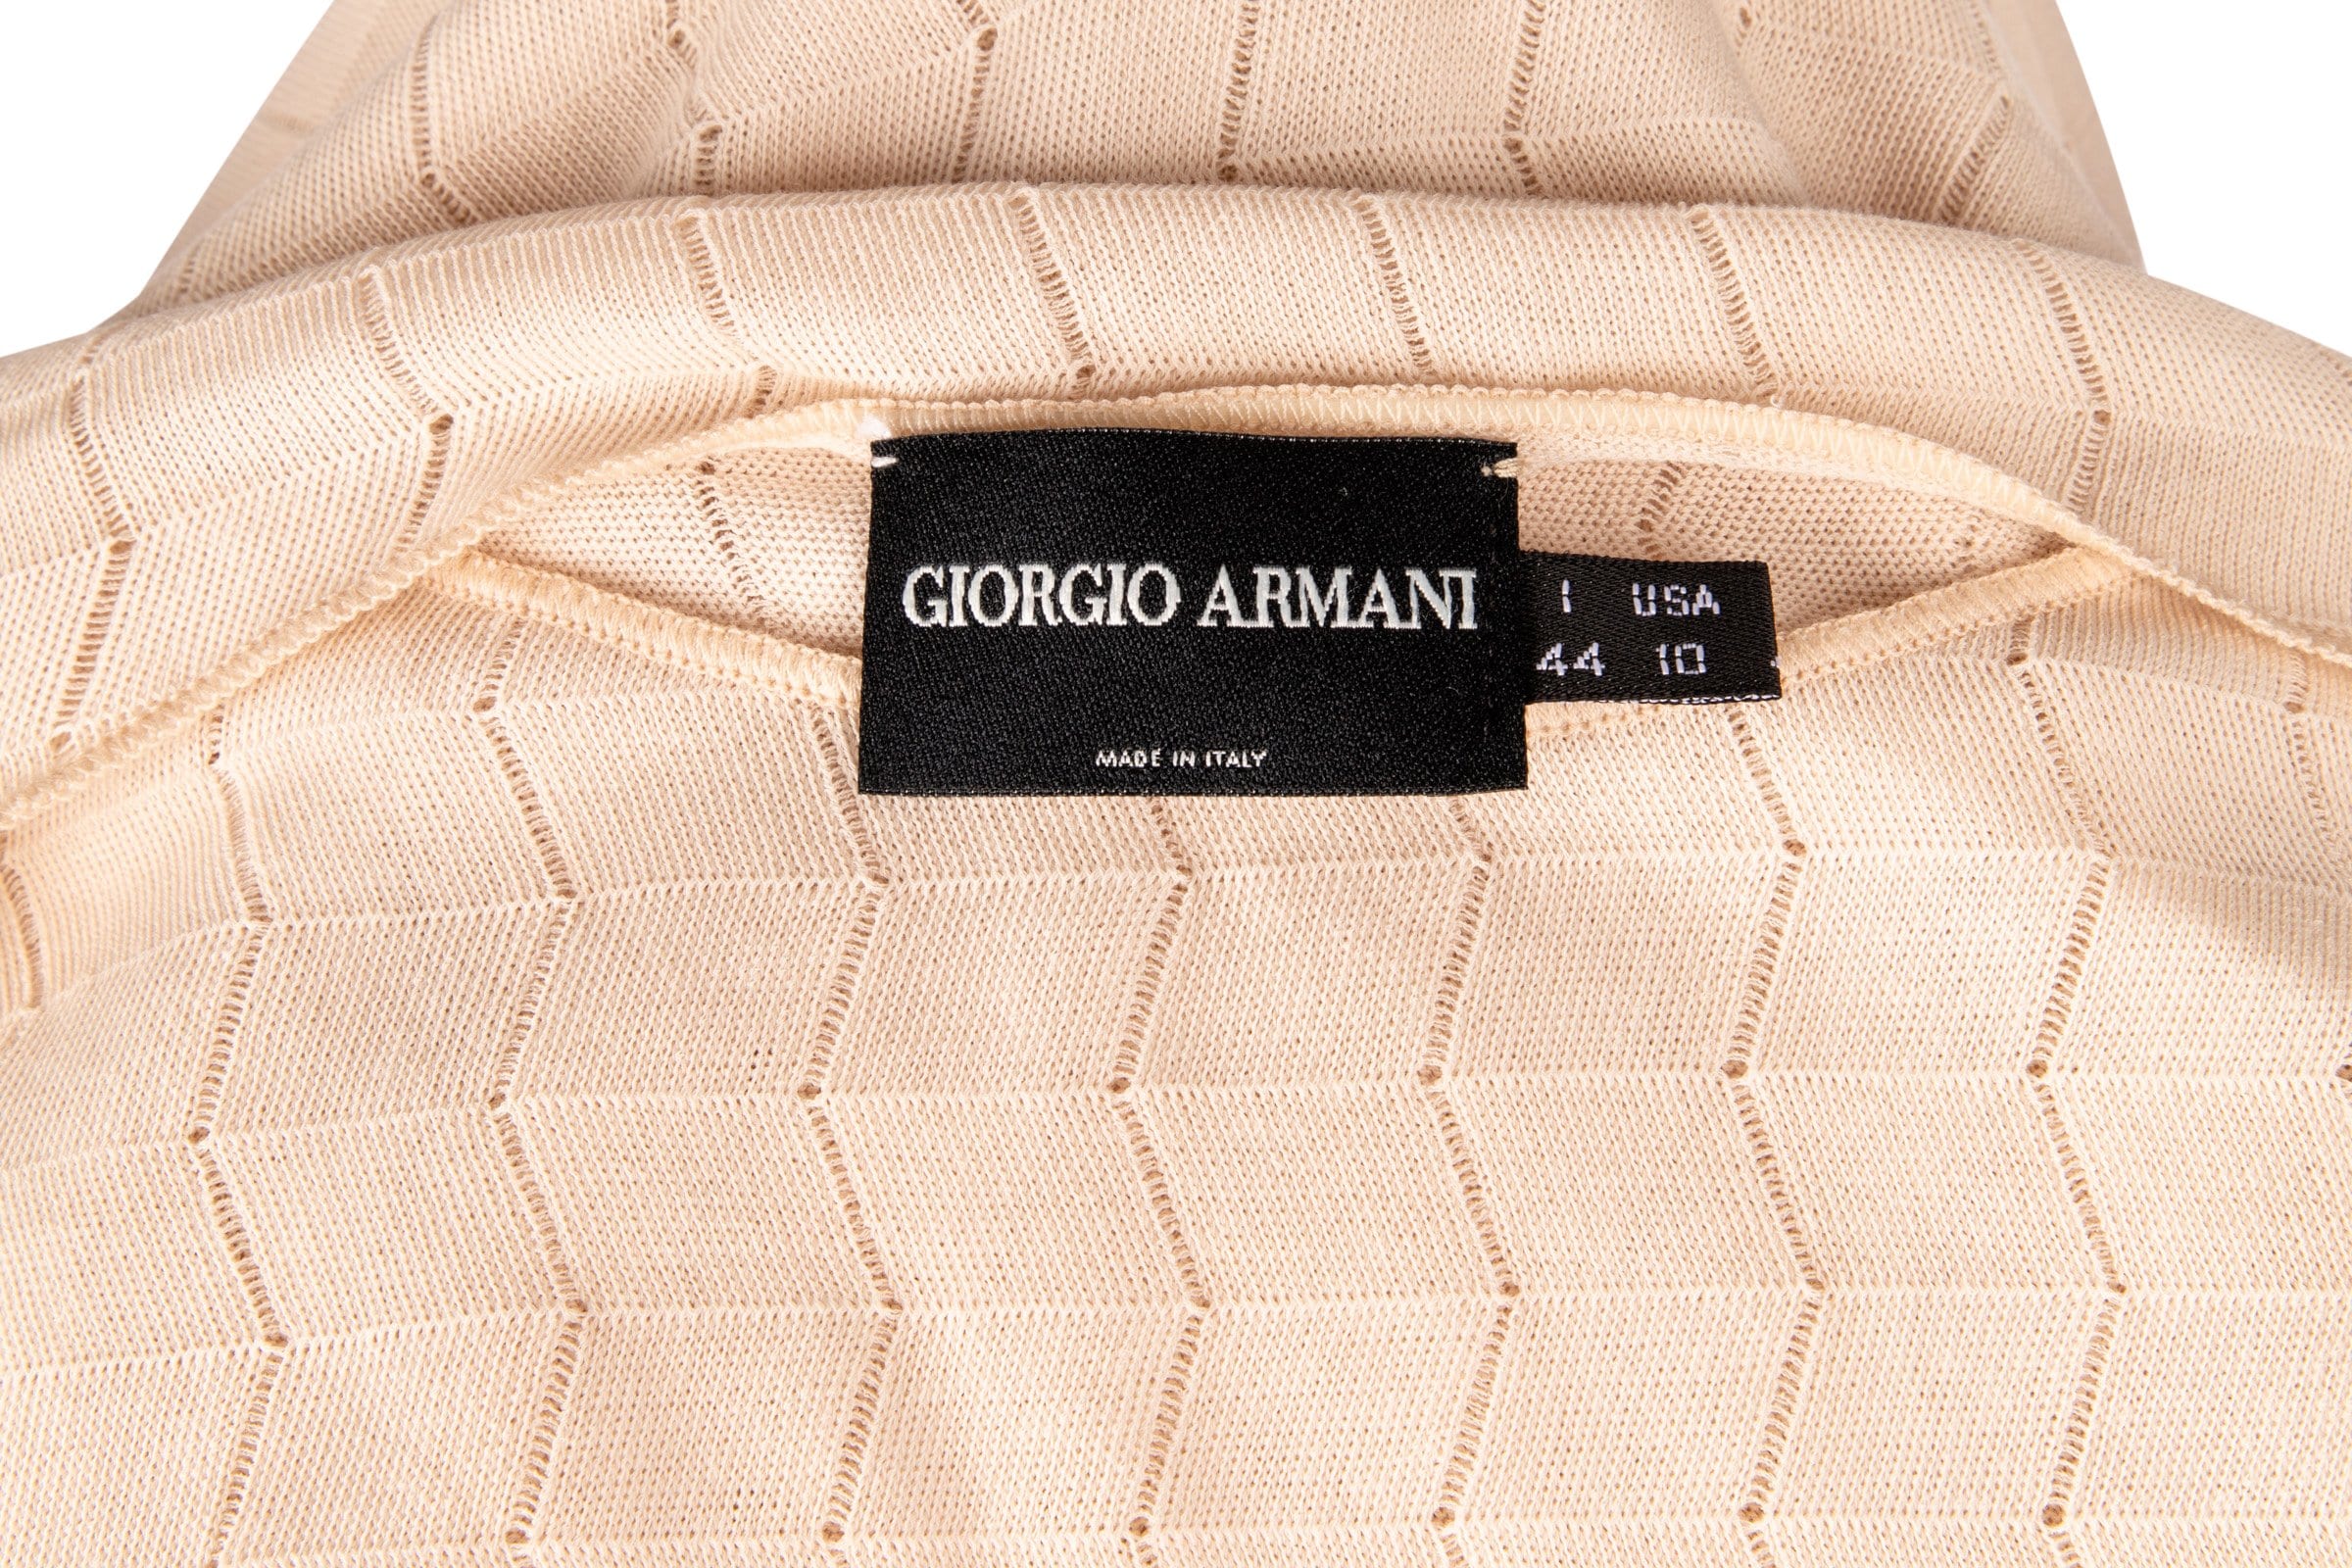 Giorgio Armani Top Nude Sleeveless Pretty Subtle Design 44 / 10 - mightychic